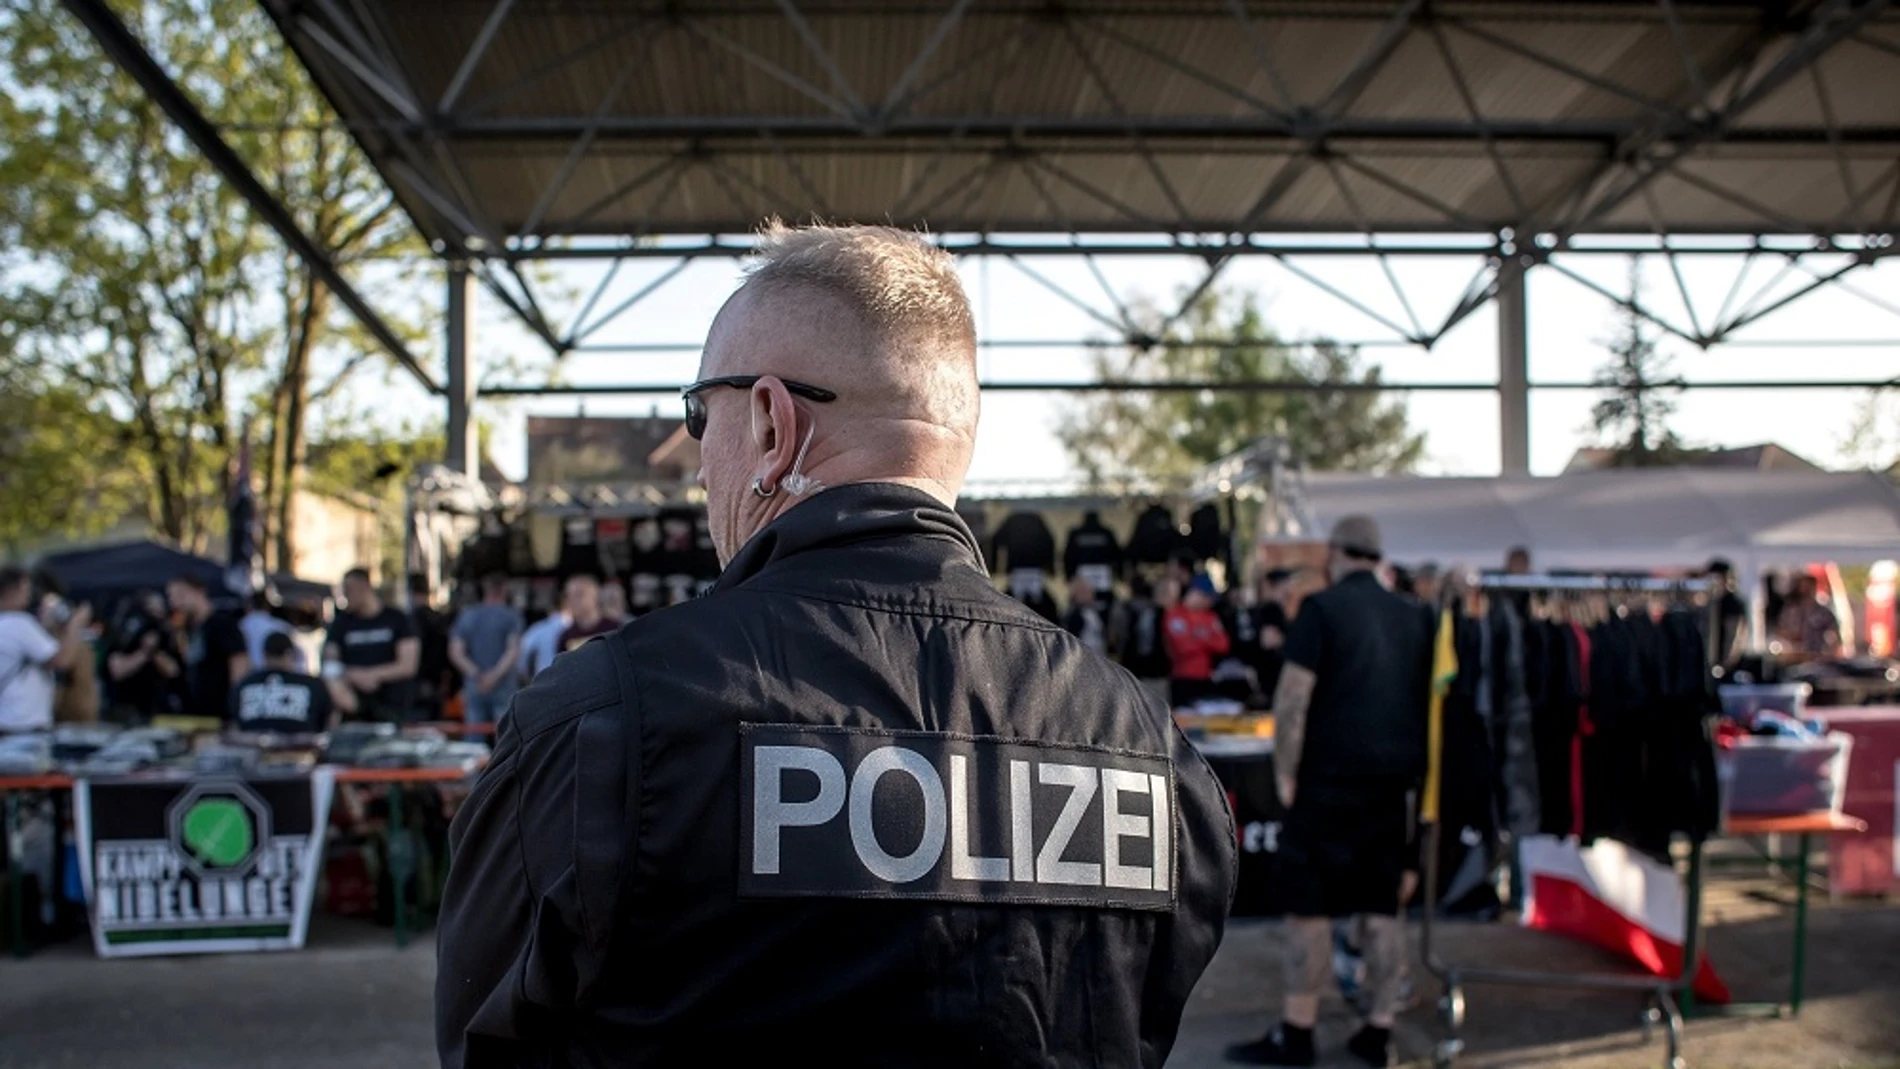  Un policía vigila a los participantes del festival neonazi.